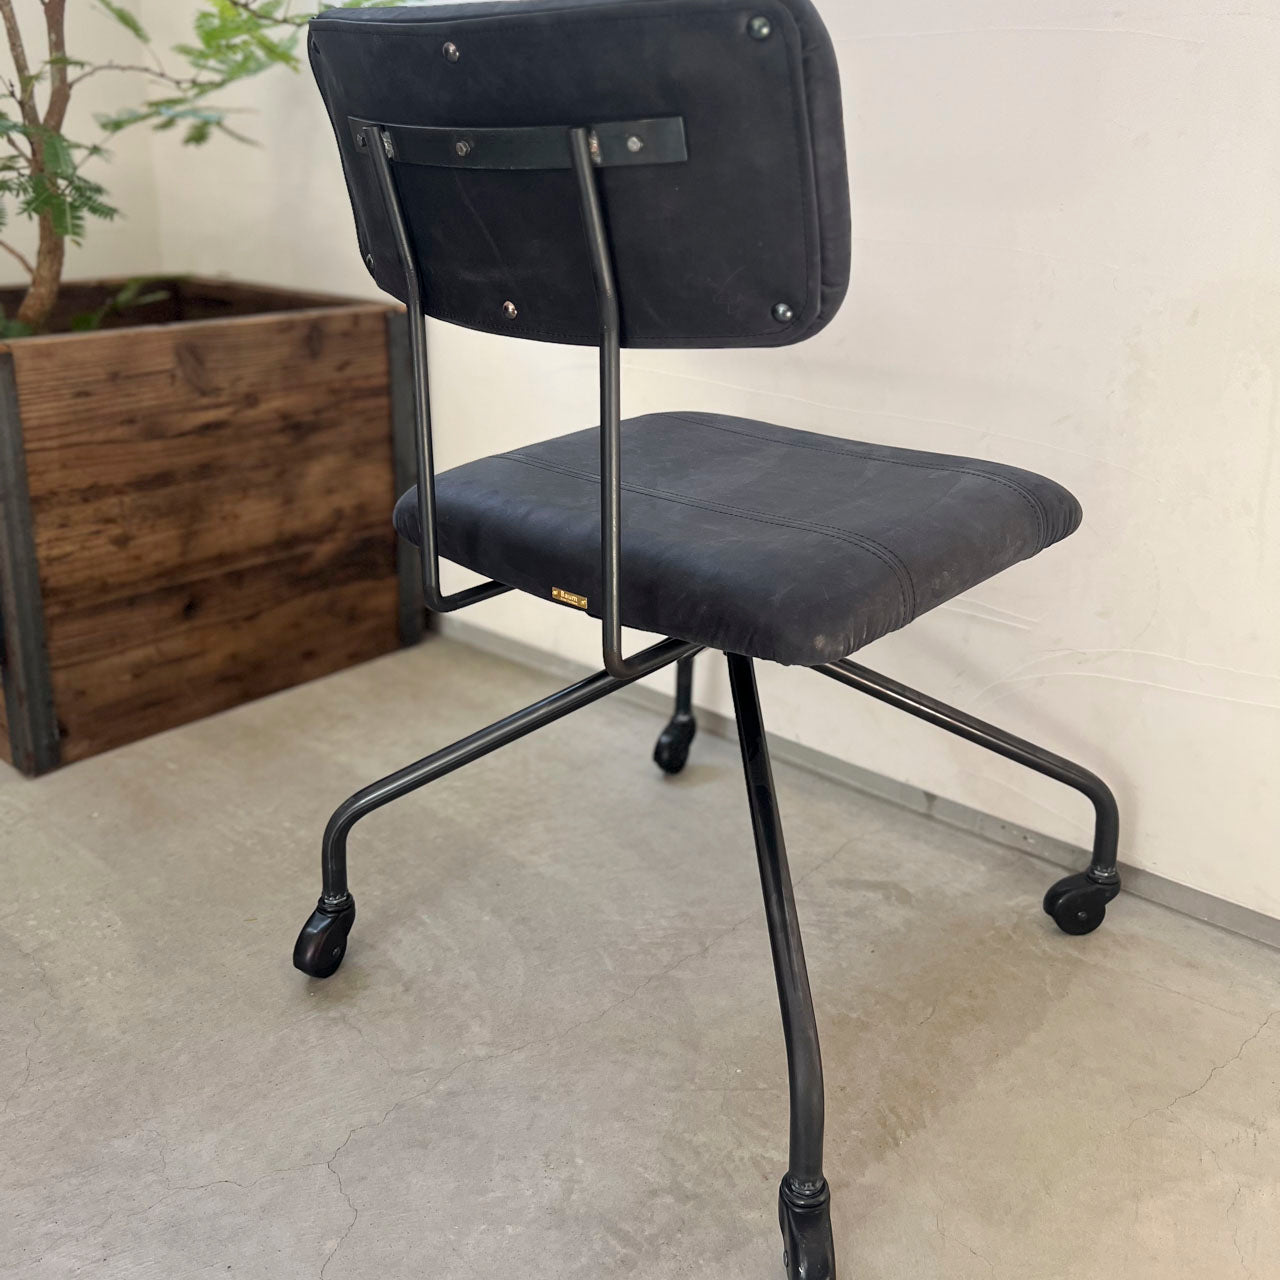 Desk Work Chair